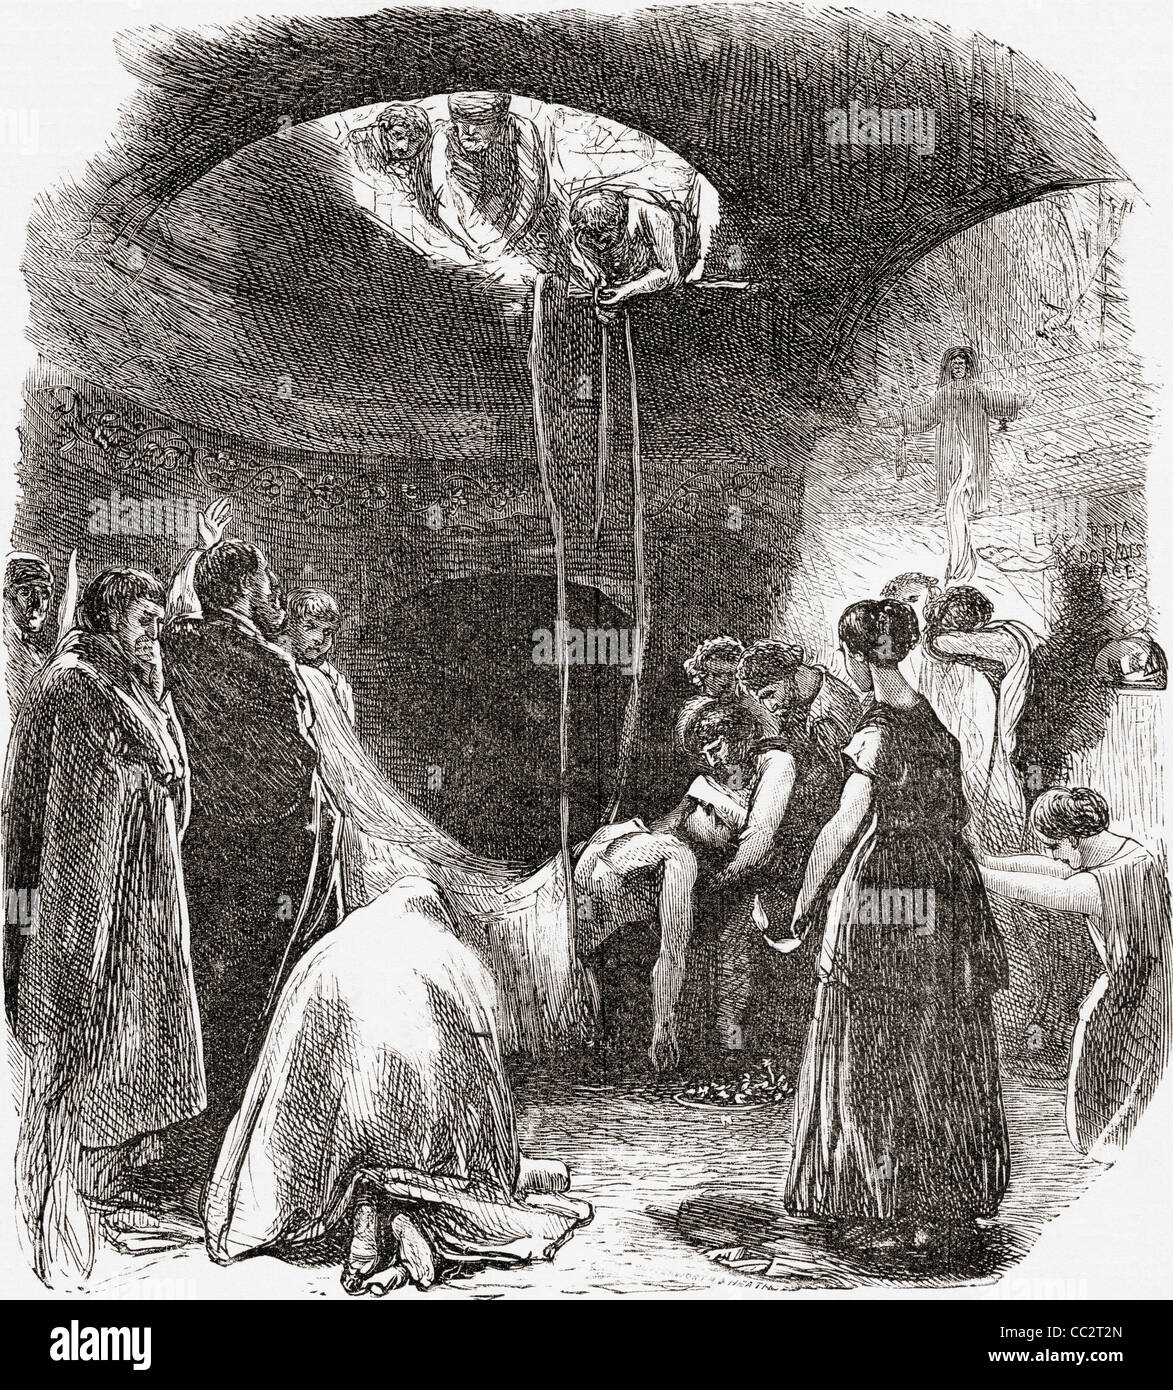 Eine frühe christliche Bestattung in die Katakomben von Rom, Italien. Vom italienischen Bilder von Reverend Samuel Manning veröffentlicht 1890. Stockfoto